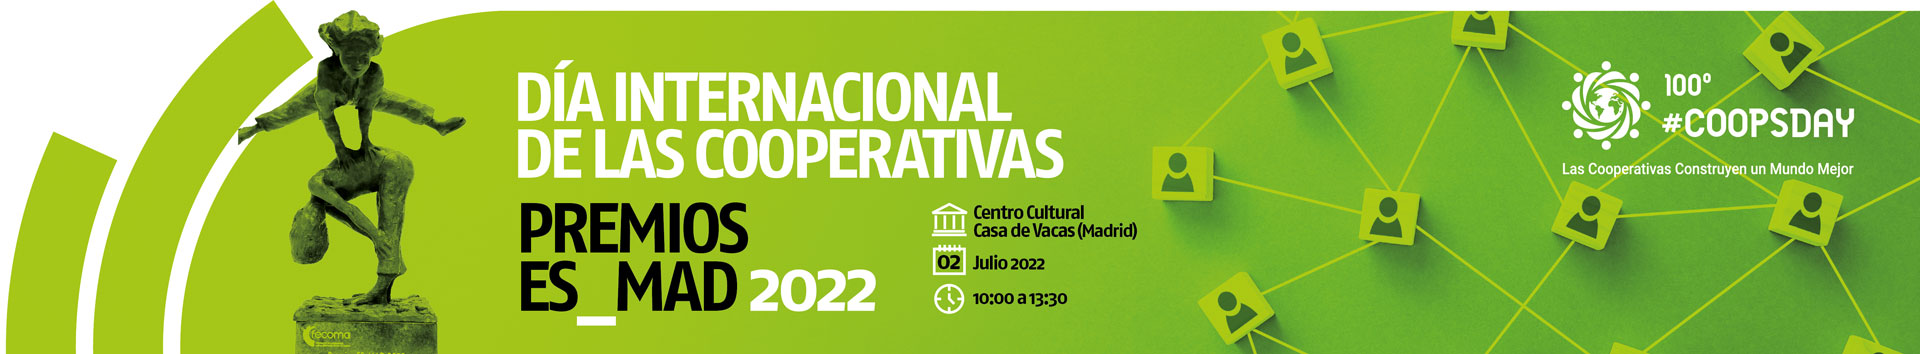 Banner Día Internacional de las Cooperativas 2022